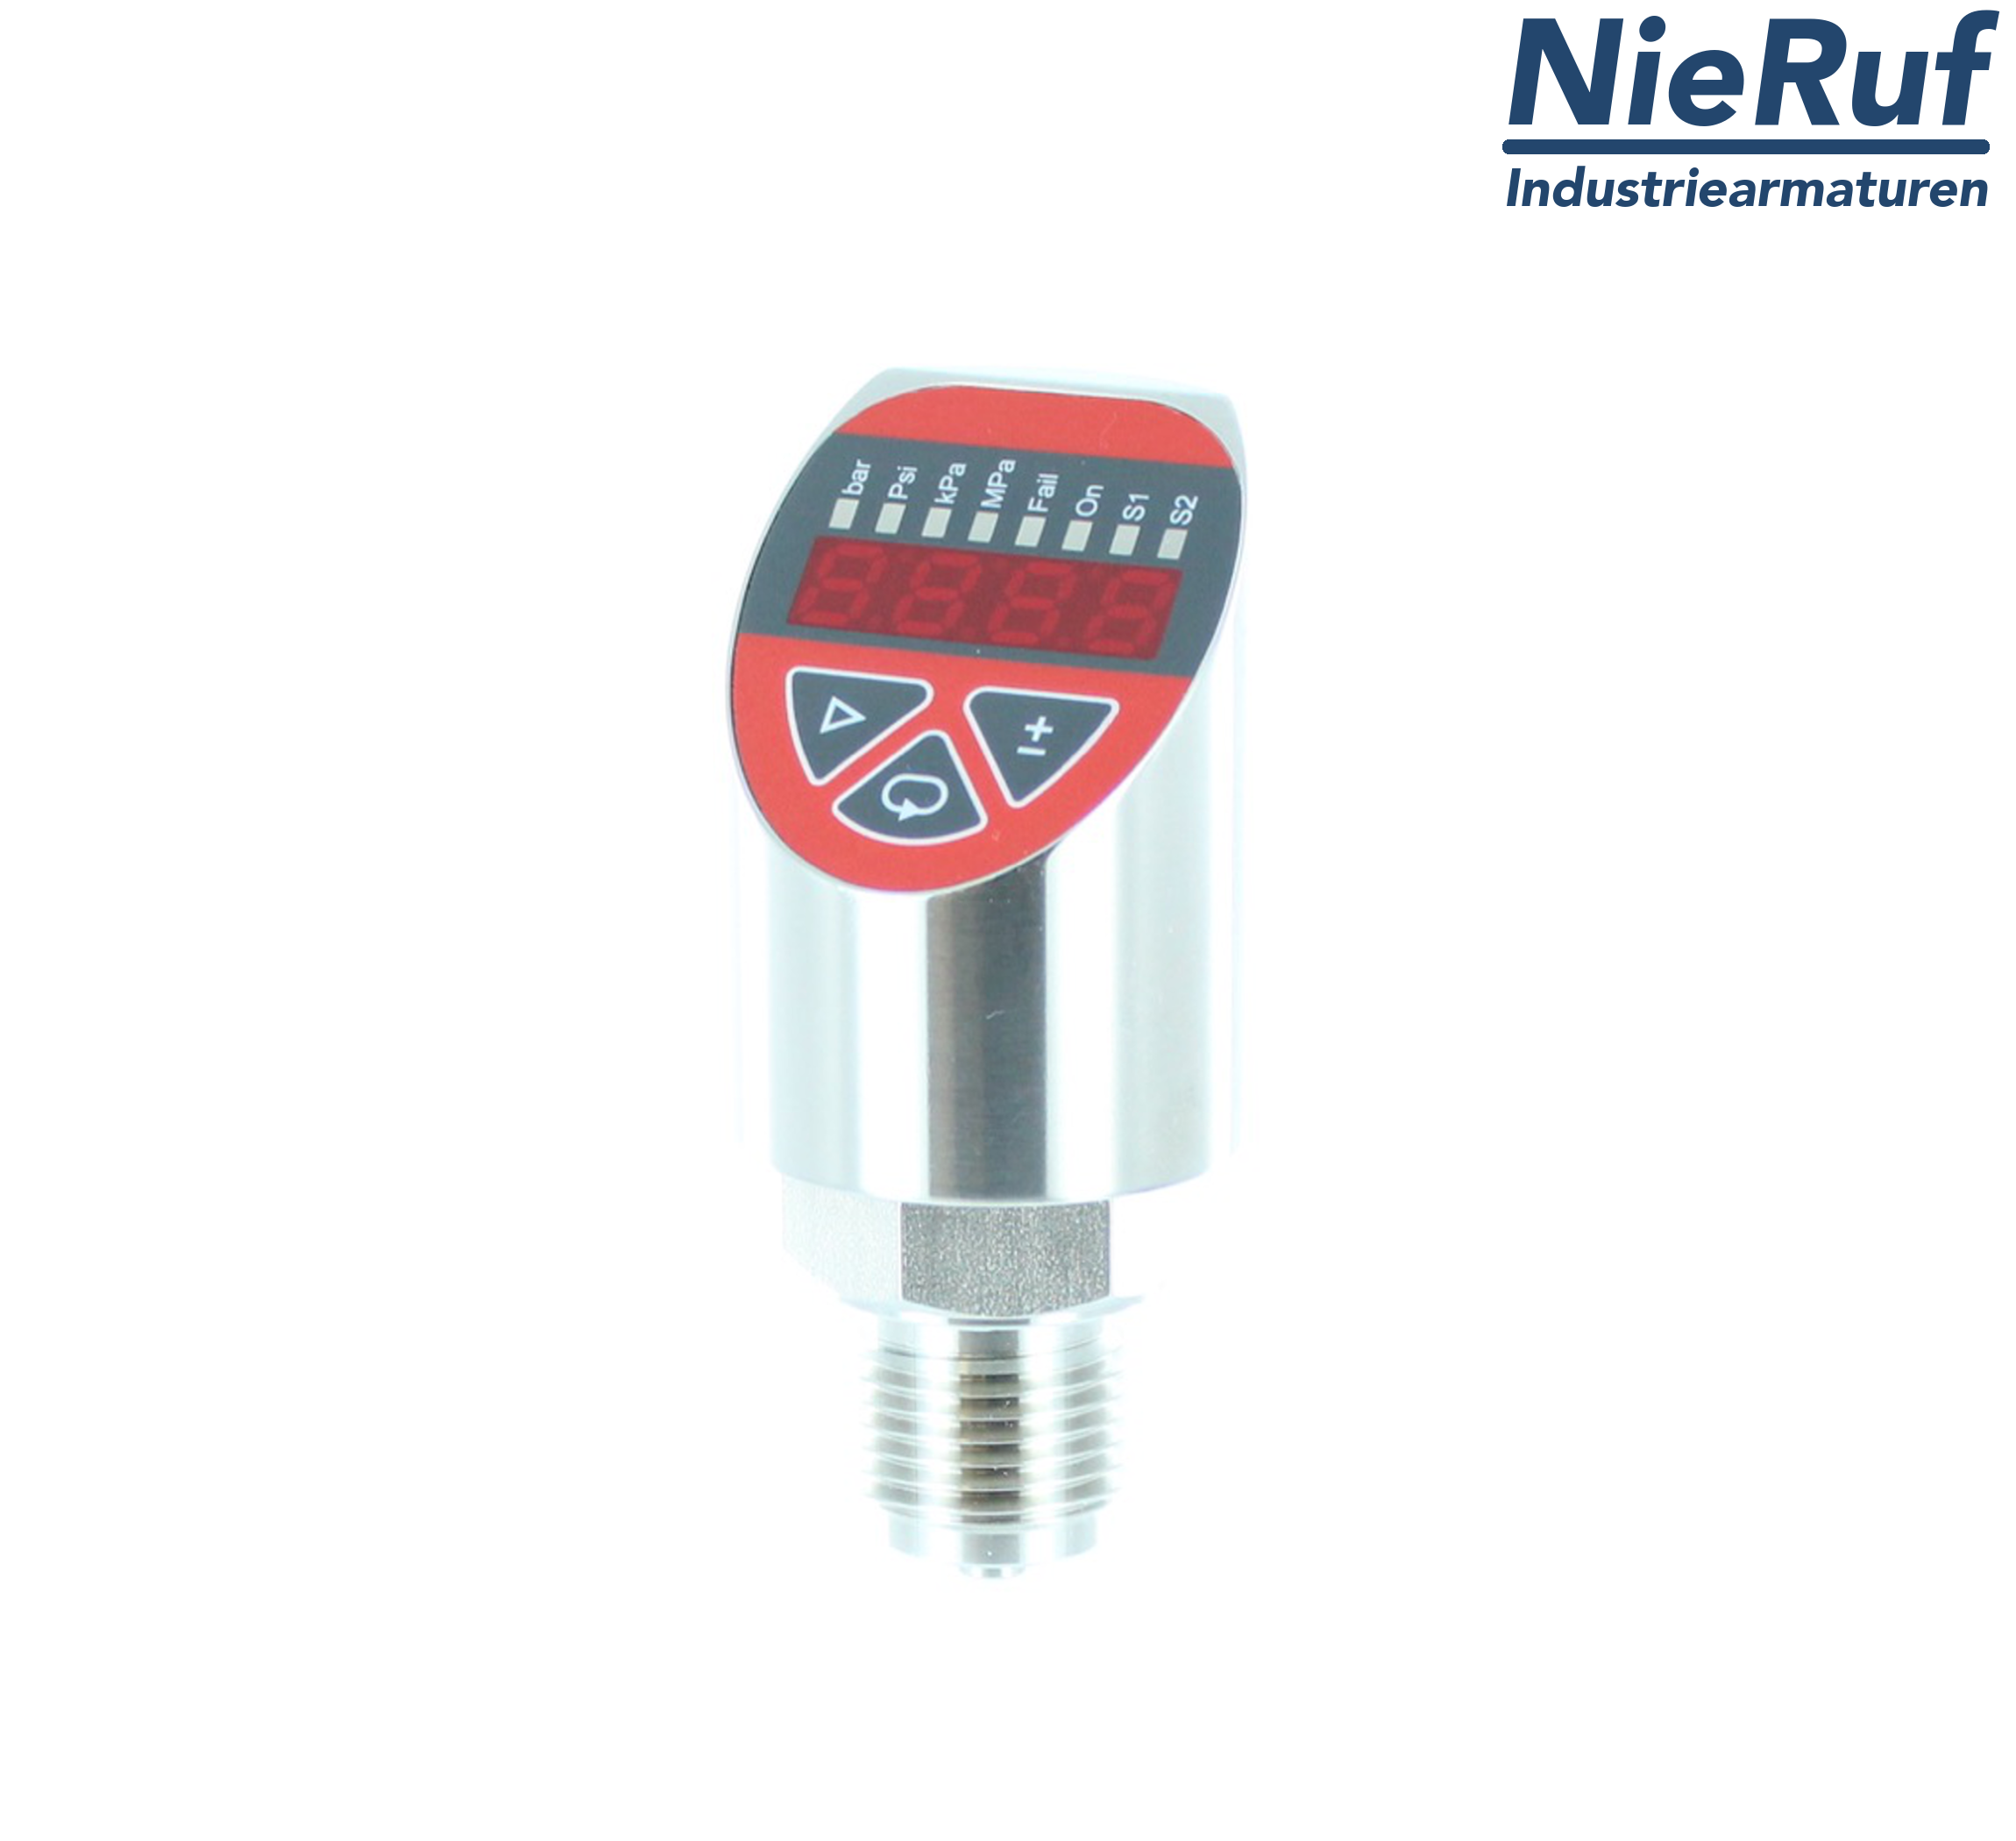 digital pressure sensor G 1/2" B IB 4-wire: 1xPNP, 1x4 - 20mA FPM 0,0 - 16,0 bar